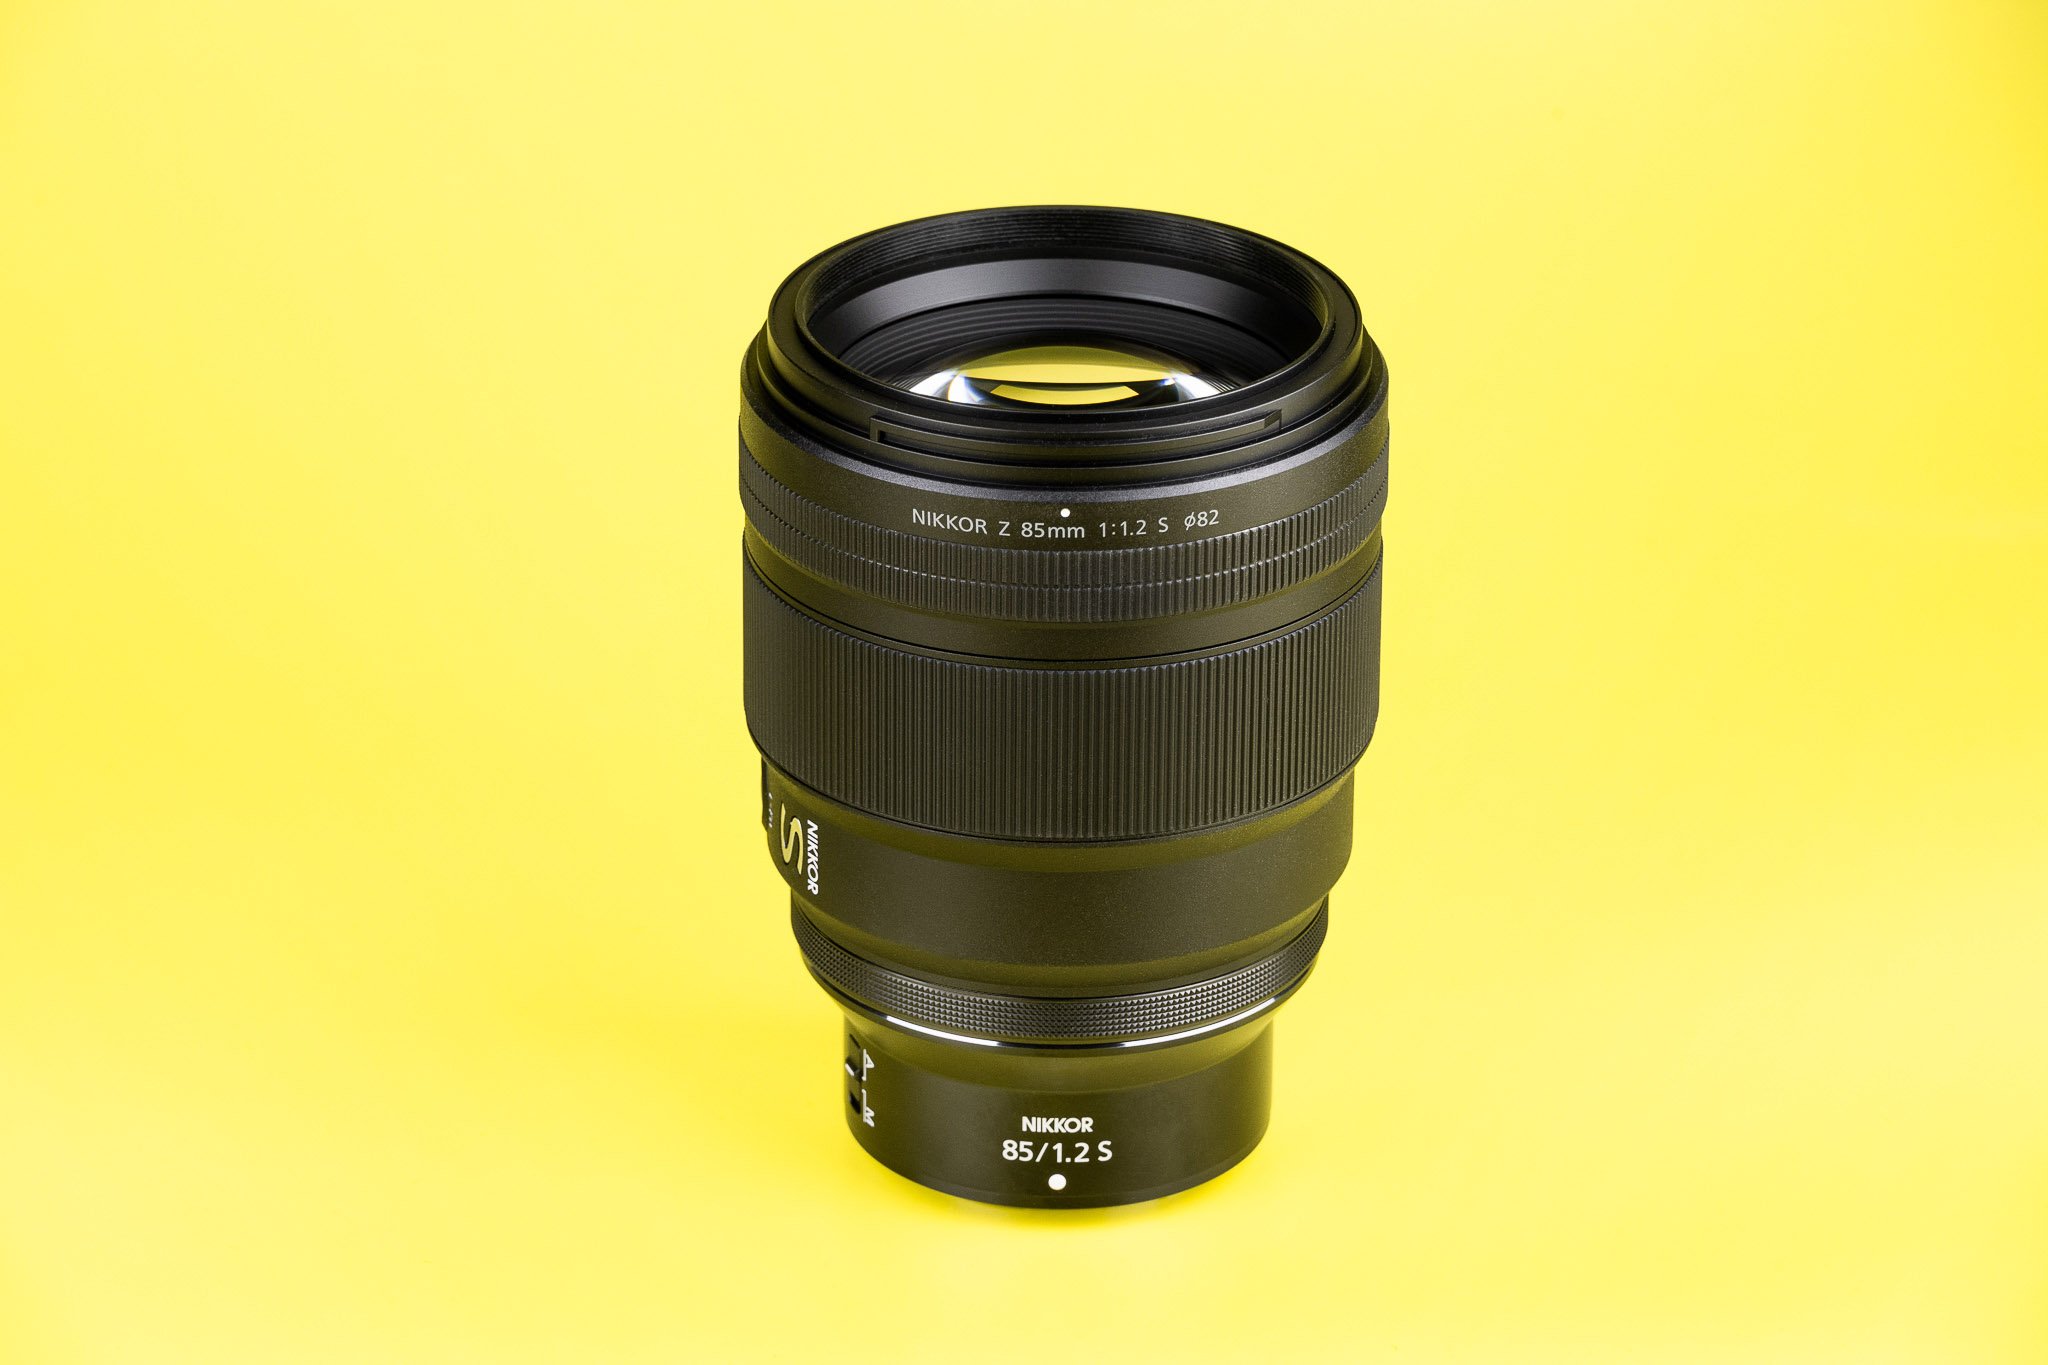 Nikon Z 85mm f/1.2 S Review